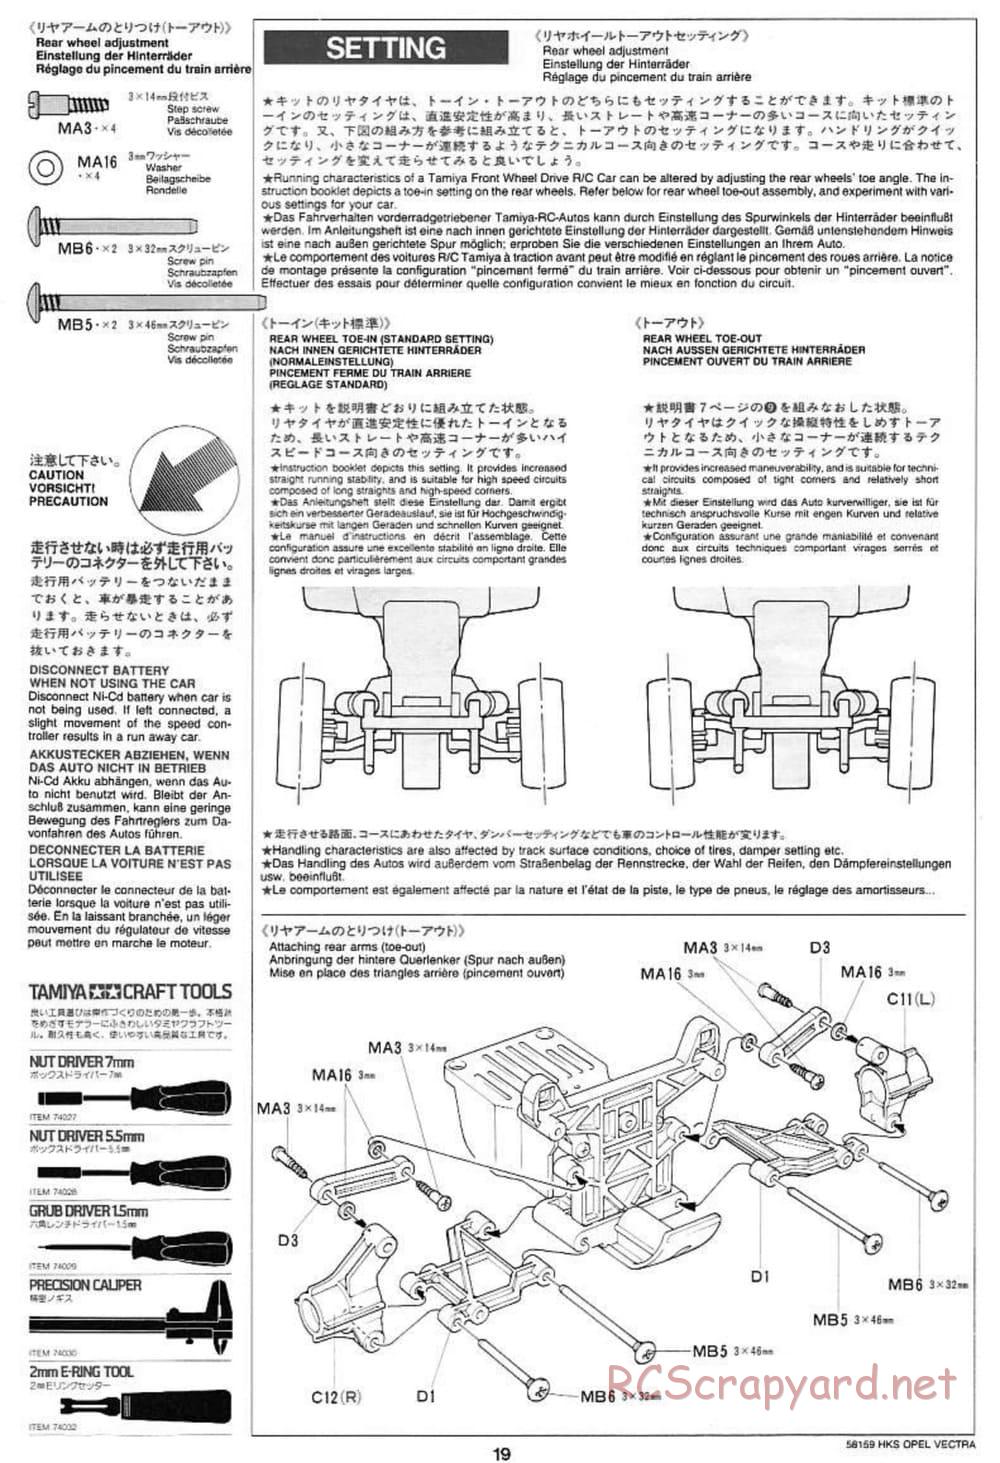 Tamiya - HKS Opel Vectra JTCC - FF-01 Chassis - Manual - Page 19